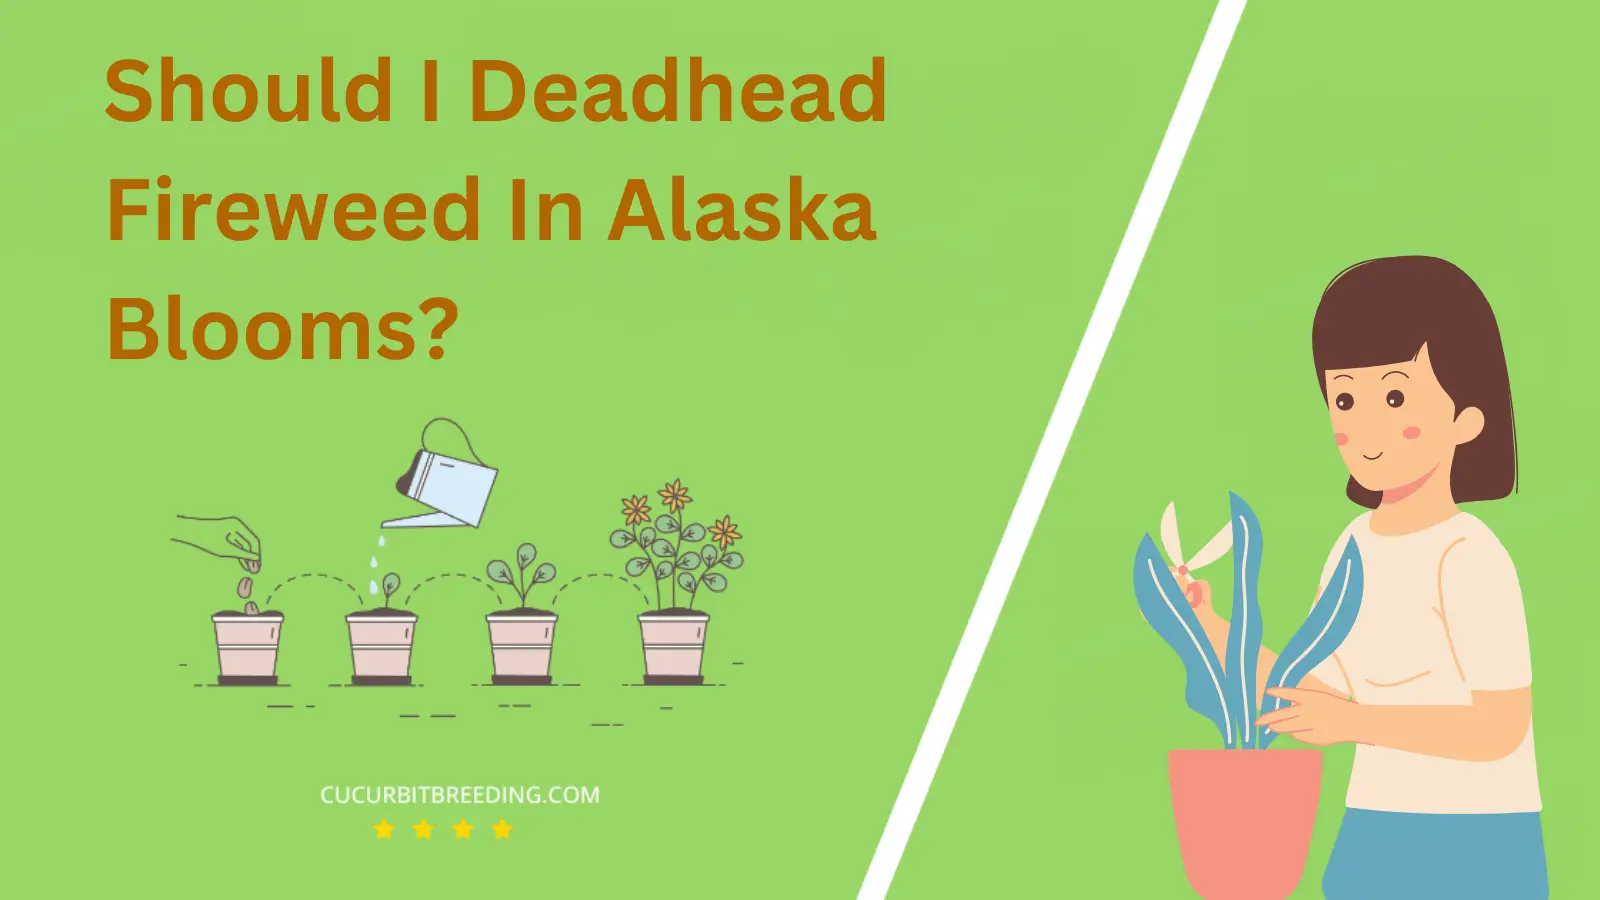 Should I Deadhead Fireweed In Alaska Blooms?